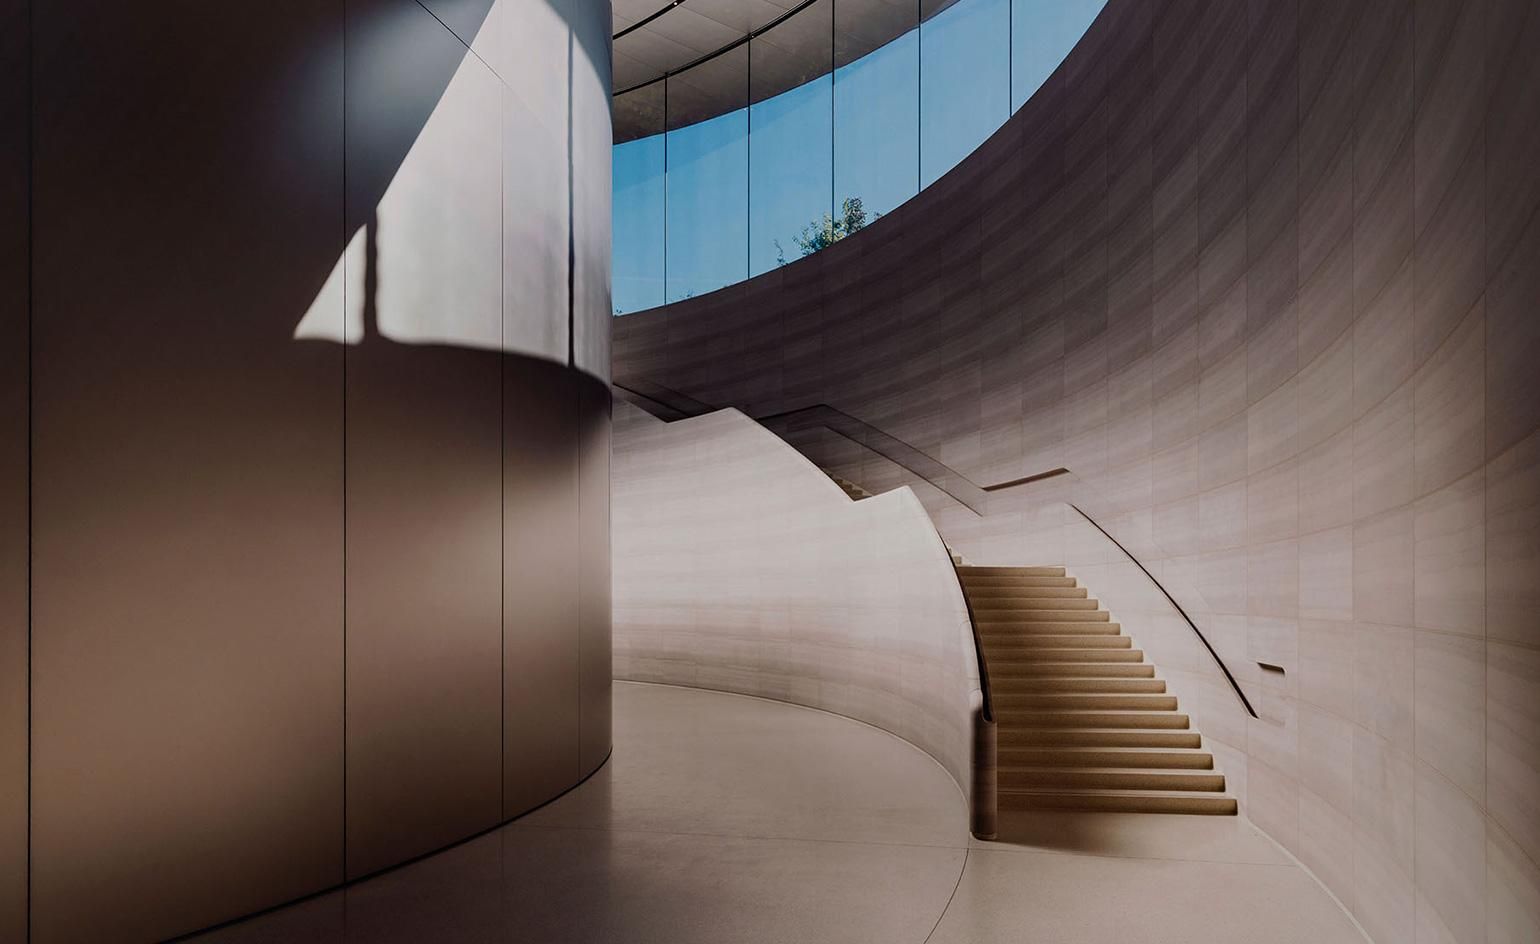 دانلود تصویر بسیار زیبا از ساختمان اپل با پله های جالب